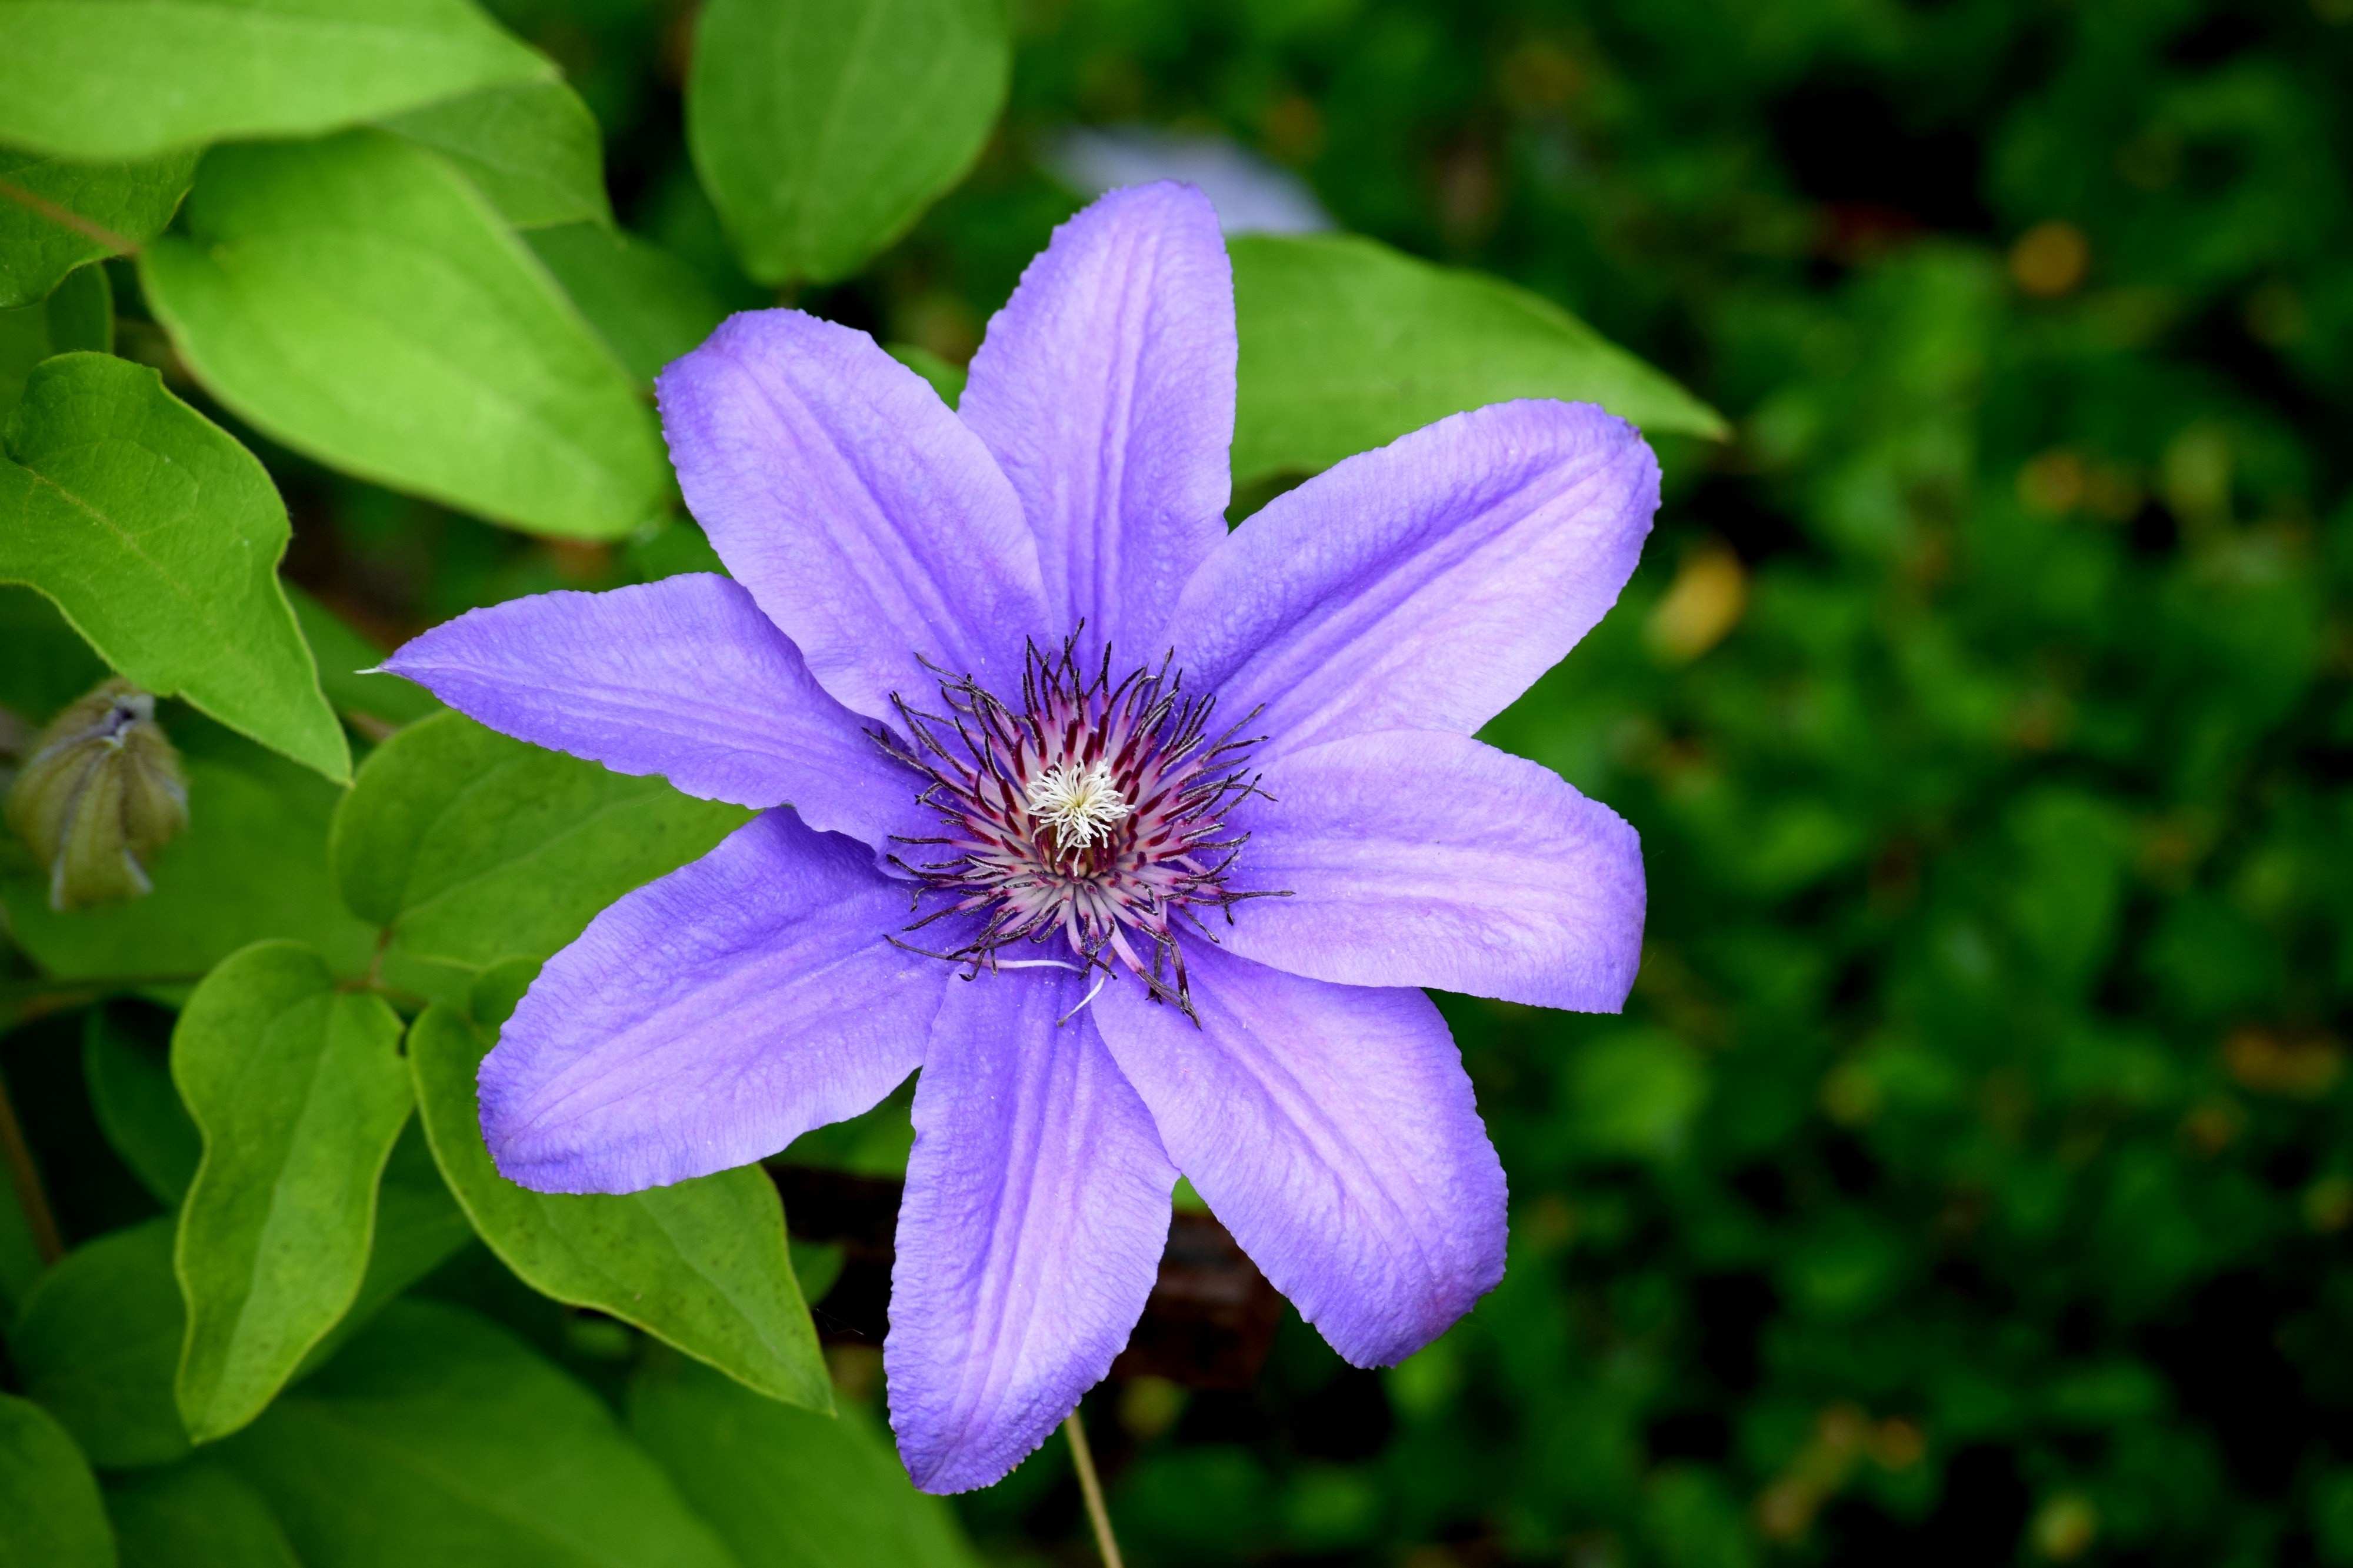 purple 8 petaled flower